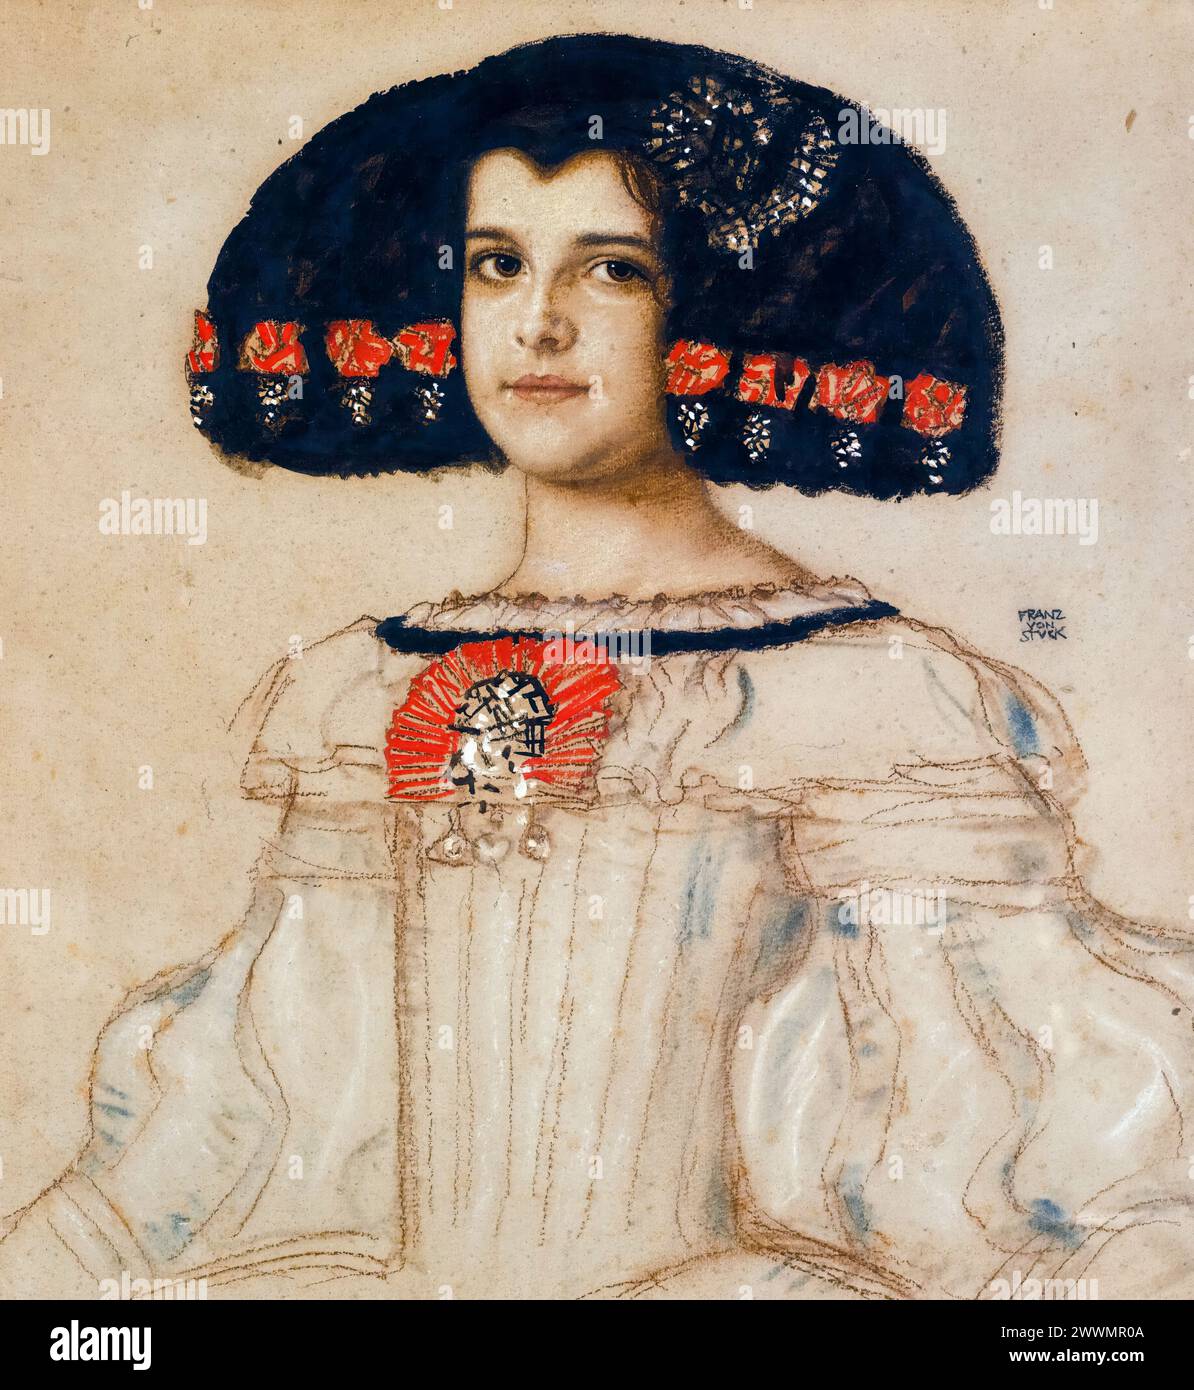 Maria steckte die Tochter des Künstlers in Velasquez-Kleid, Porträtzeichnung in gemischten Medien an Bord von Franz von Stuck, um 1908 Stockfoto